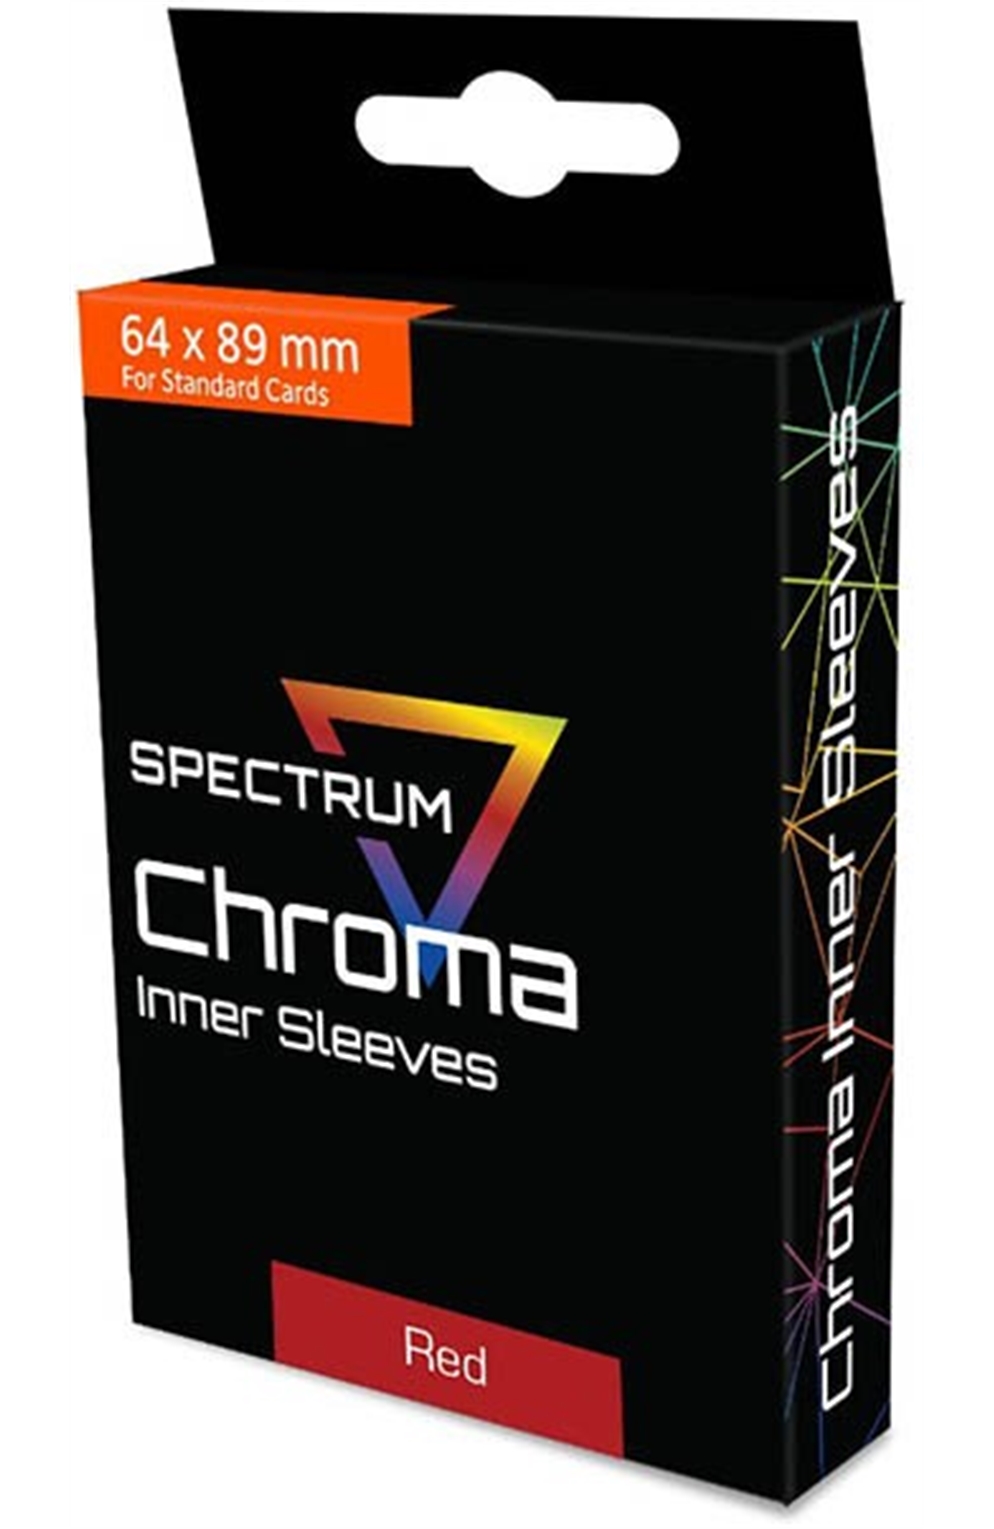 Spectrum Chroma Standard Size (64X89mm) Inner Sleeves - Red (100)